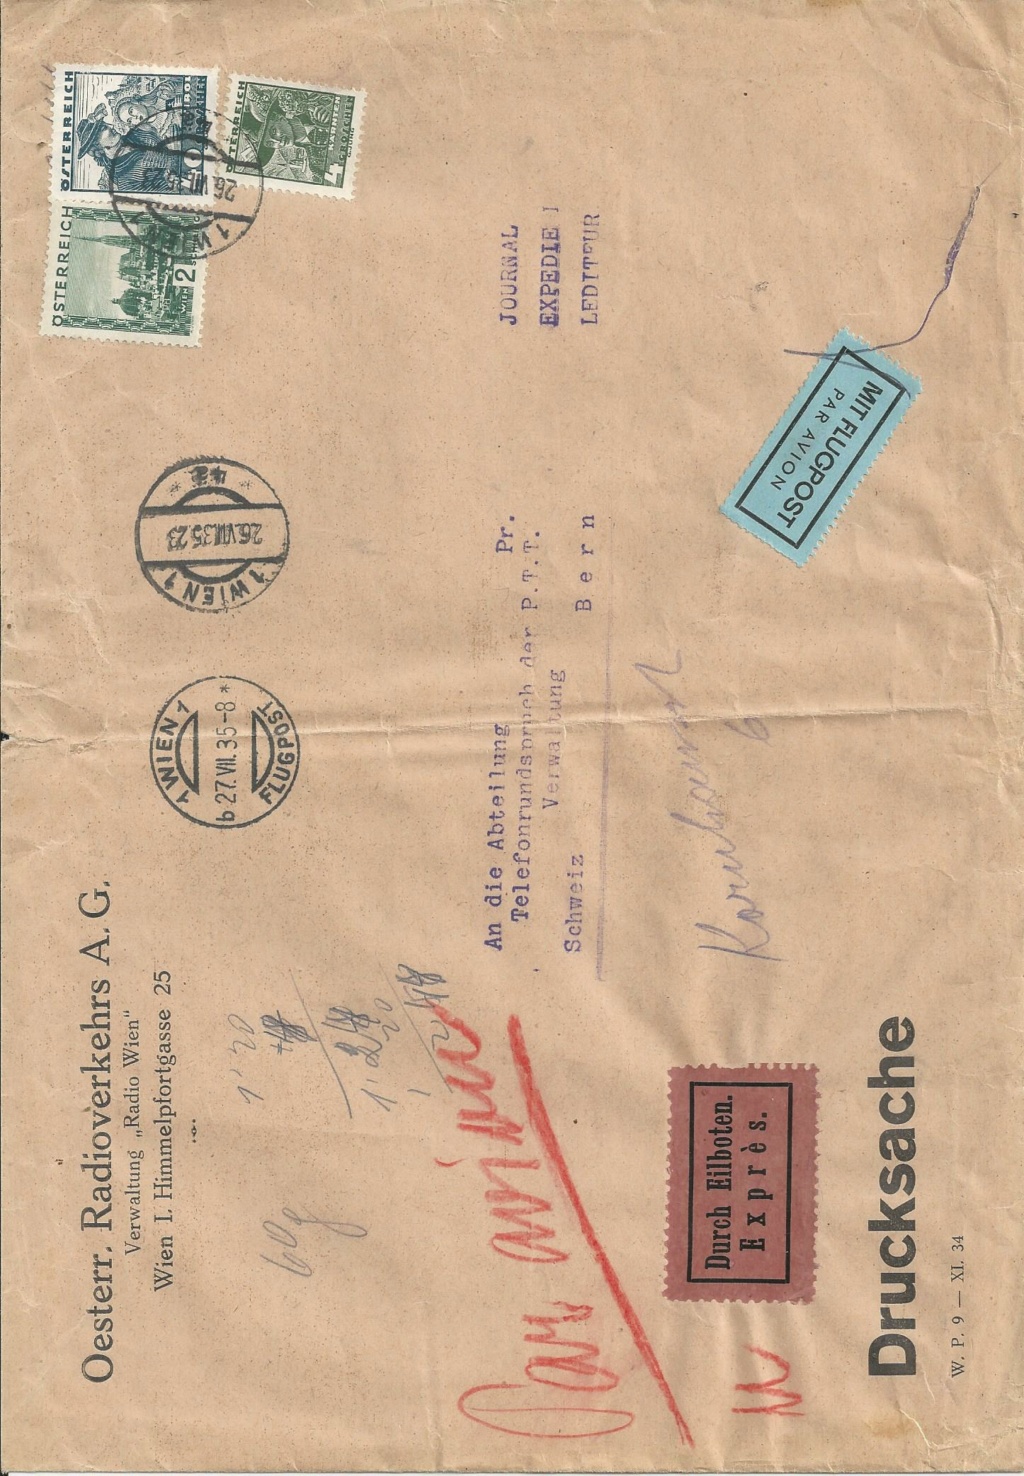 Osterreich - Österreich 1925 - 1938 - Seite 20 Bild1355